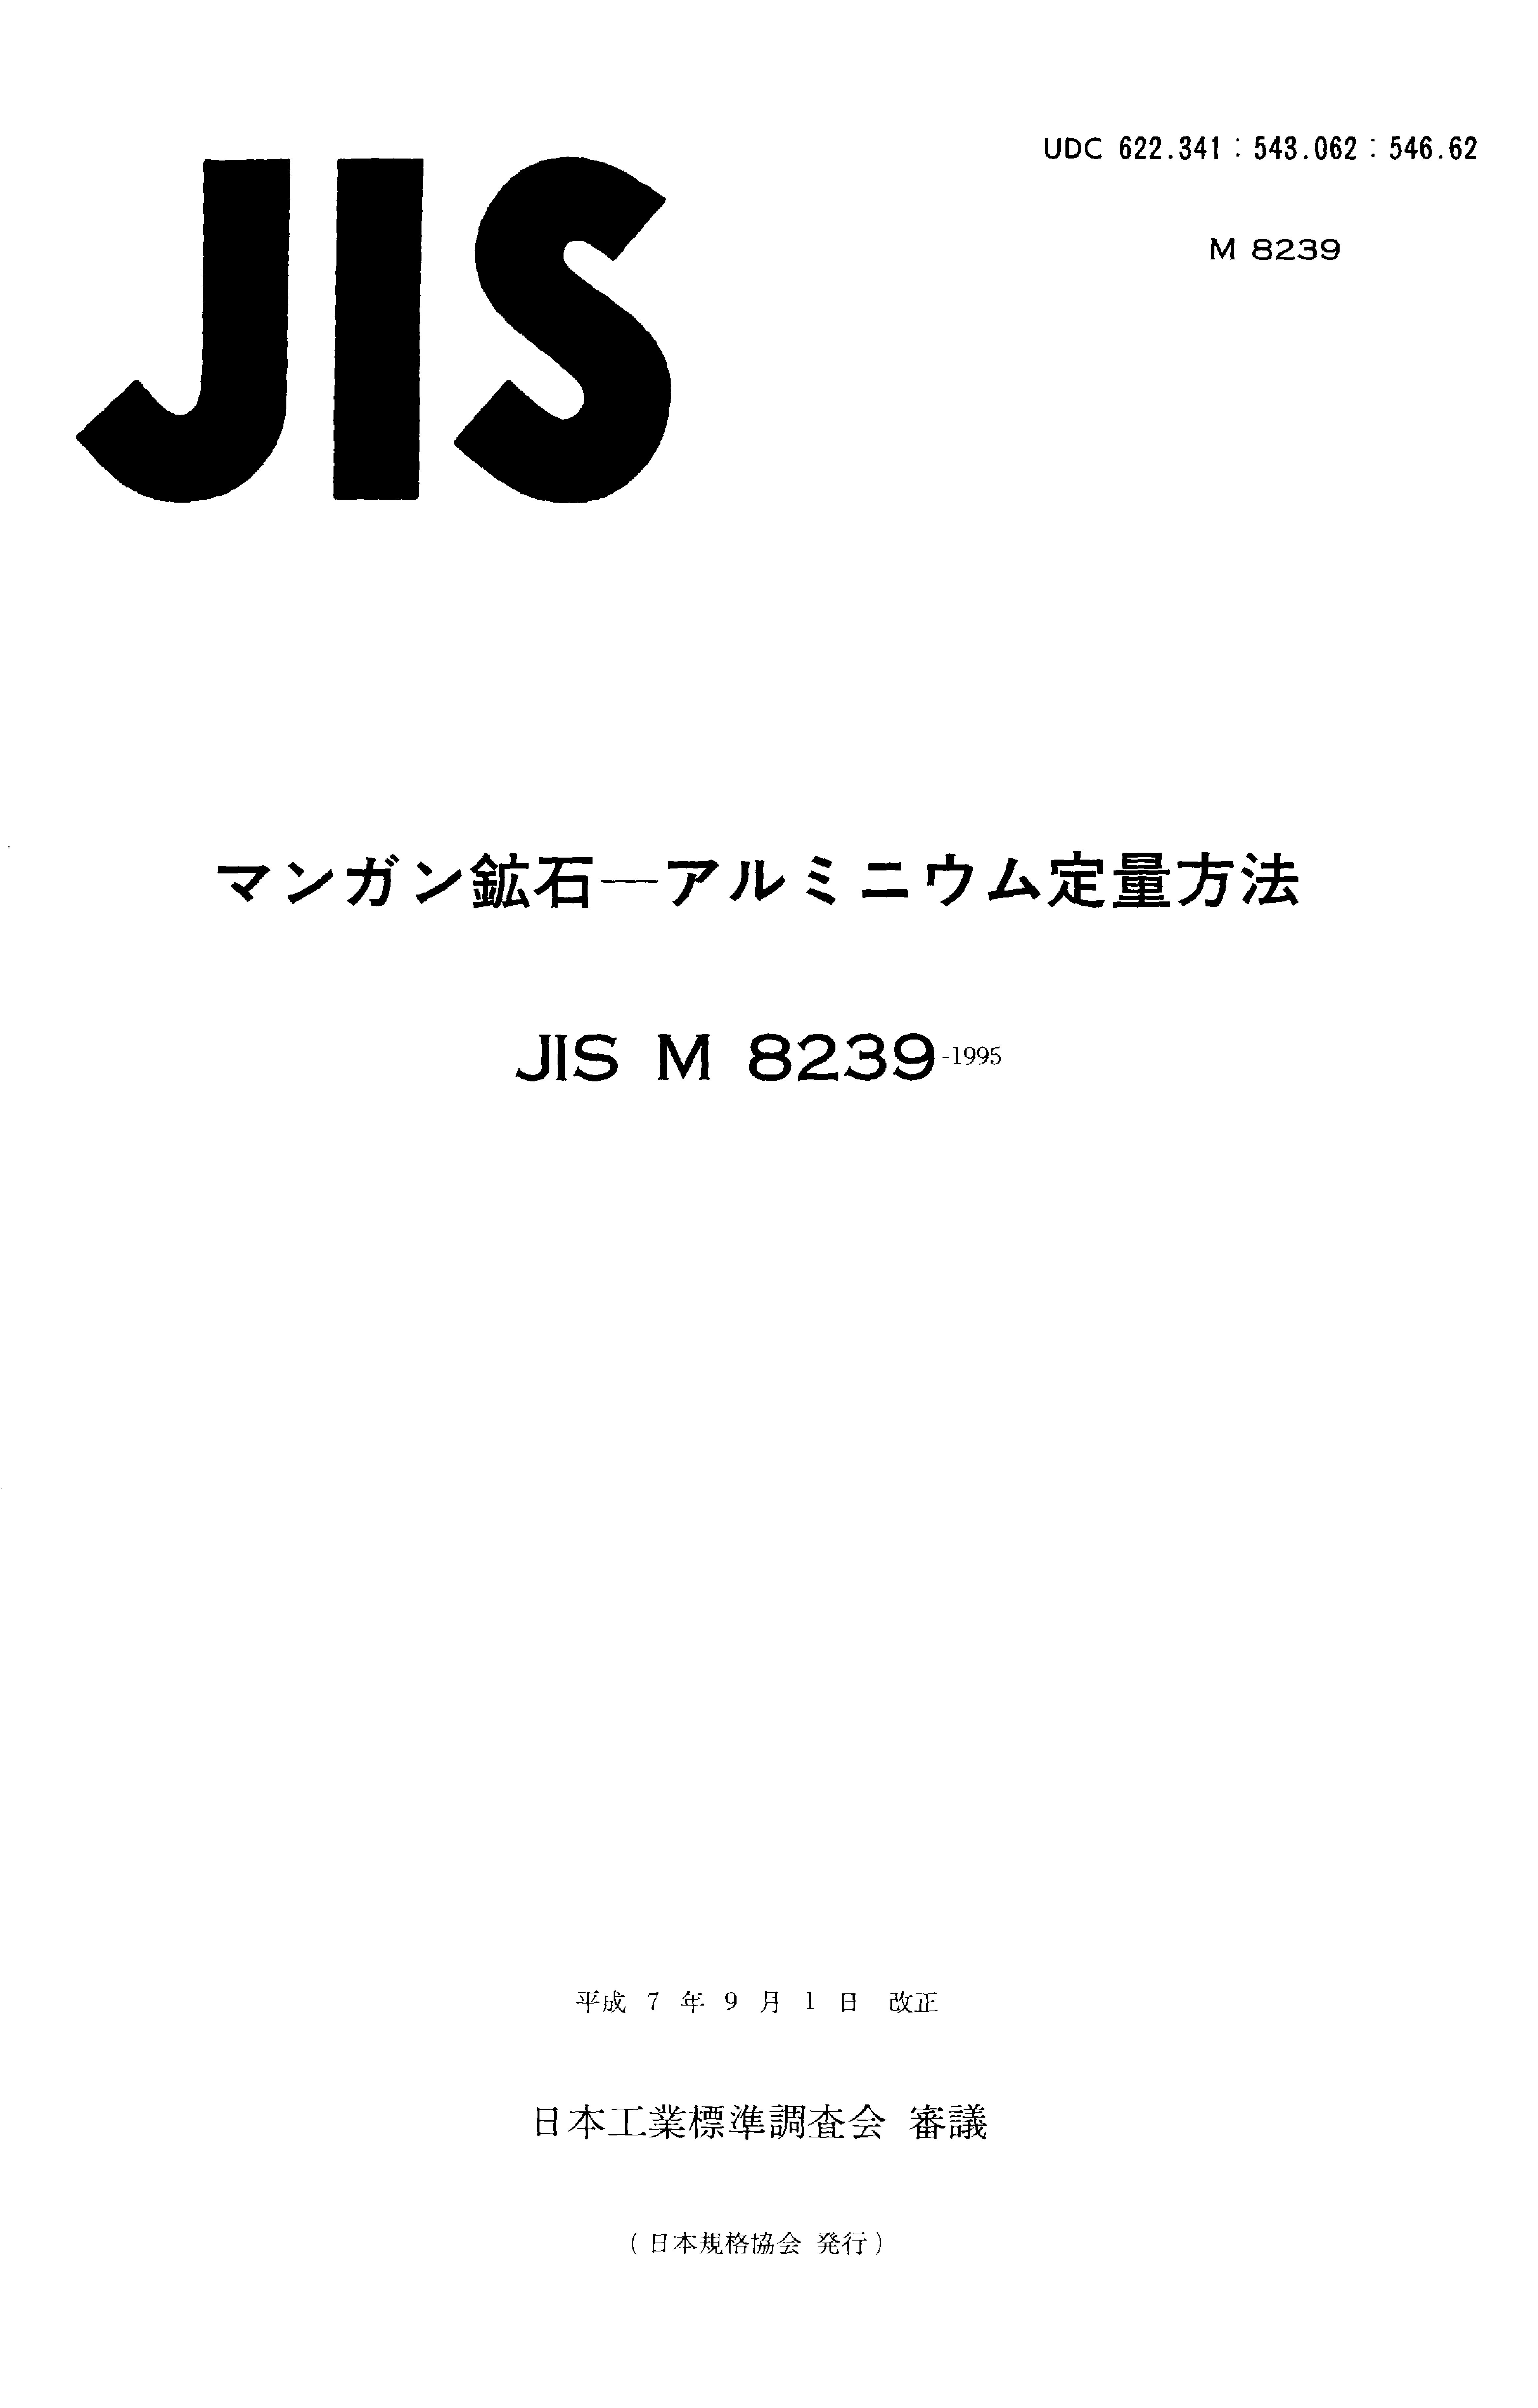 JIS M 8239:1995